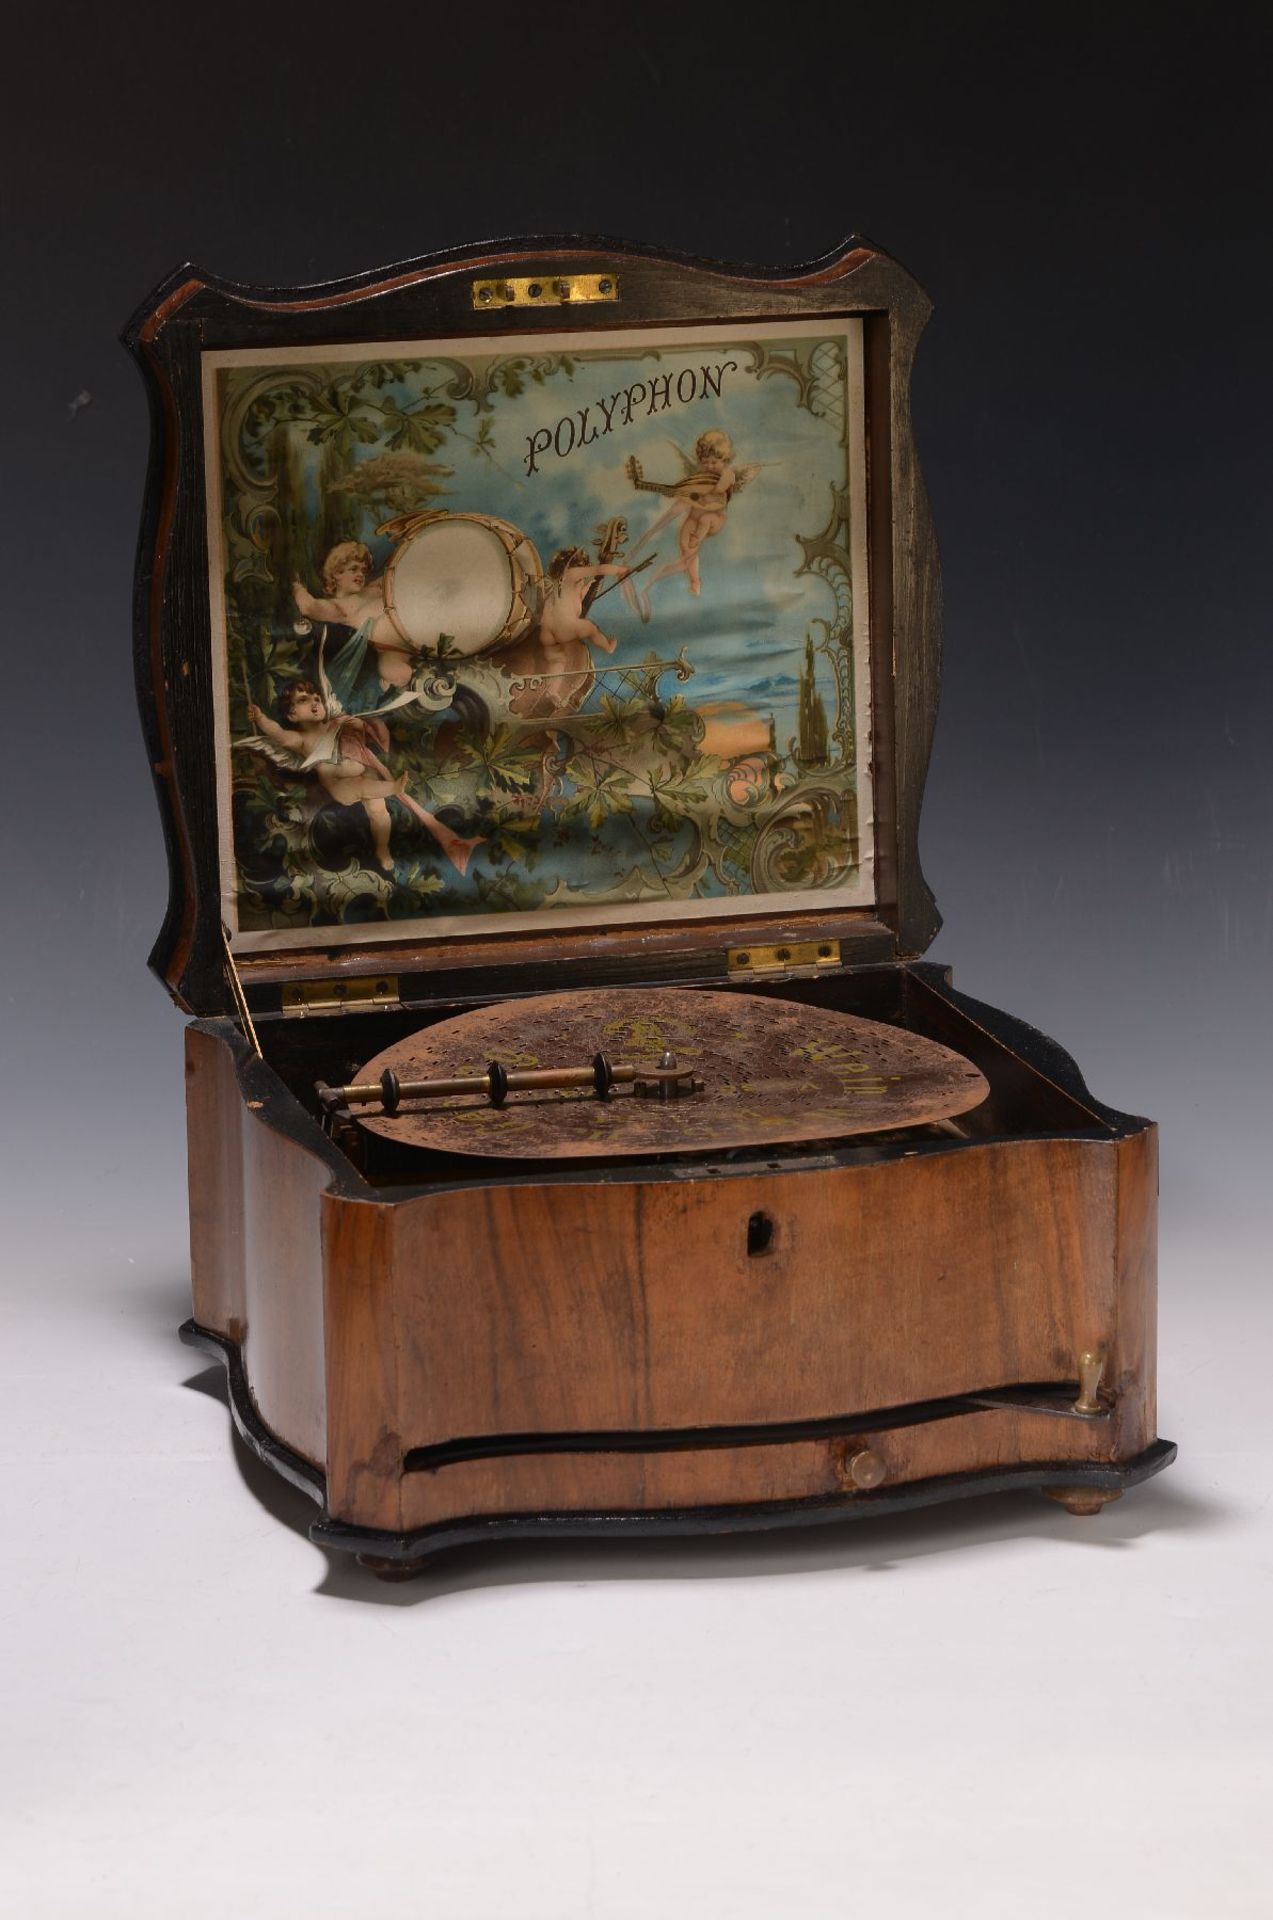 Lochblechplattenspieluhr, Polyphon, um 1900,  Kamm in